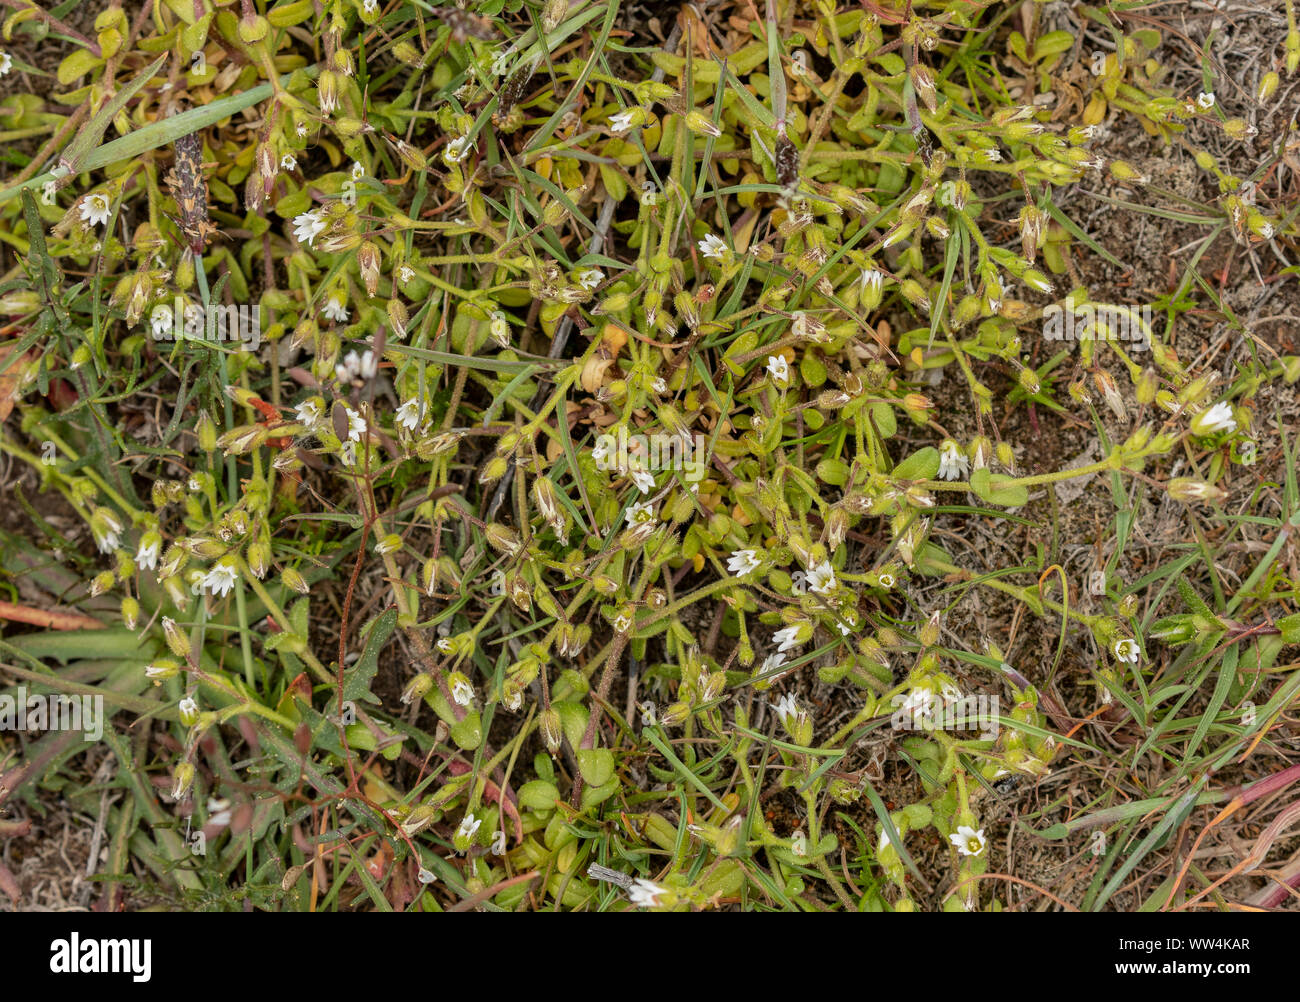 A chickweed, Cerastium glutinosum, in limestone grassland, Oland, Sweden. Stock Photo